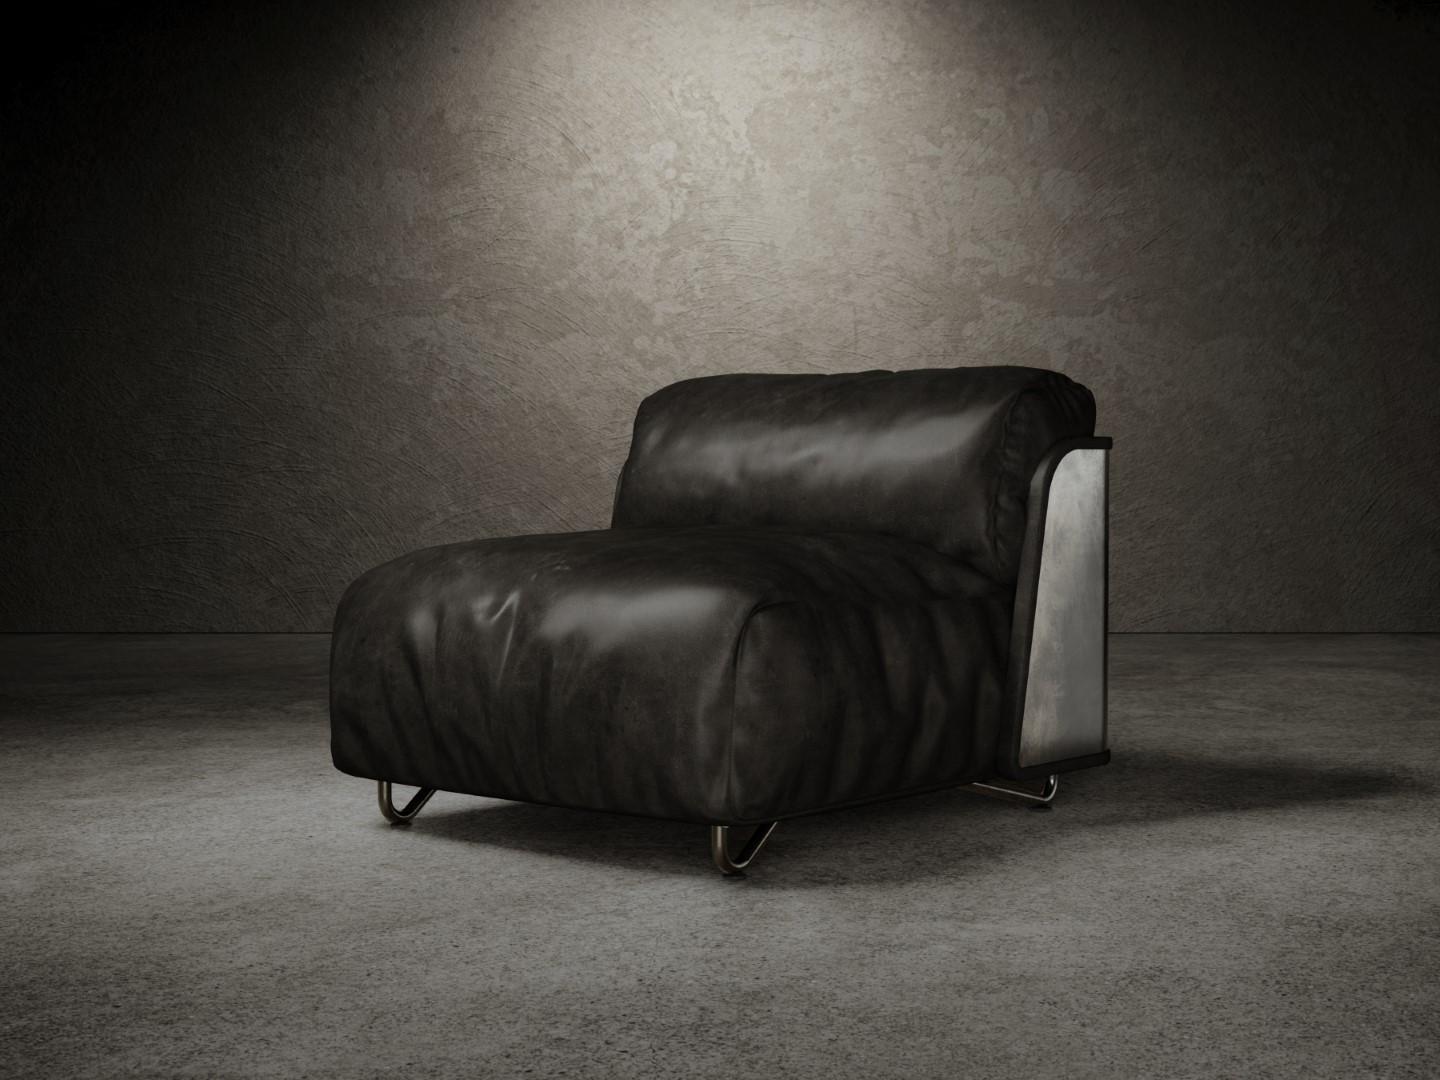 Der Sessel Saint-germain besteht aus einer mattschwarzen Holzplatte, die im äußeren Teil mit einer Metallbeschichtung versehen ist, mit einem optionalen gepolsterten Rand in der gleichen Polsterung wie die Sitzfläche. 
Die Sitz- und Rückenpolsterung